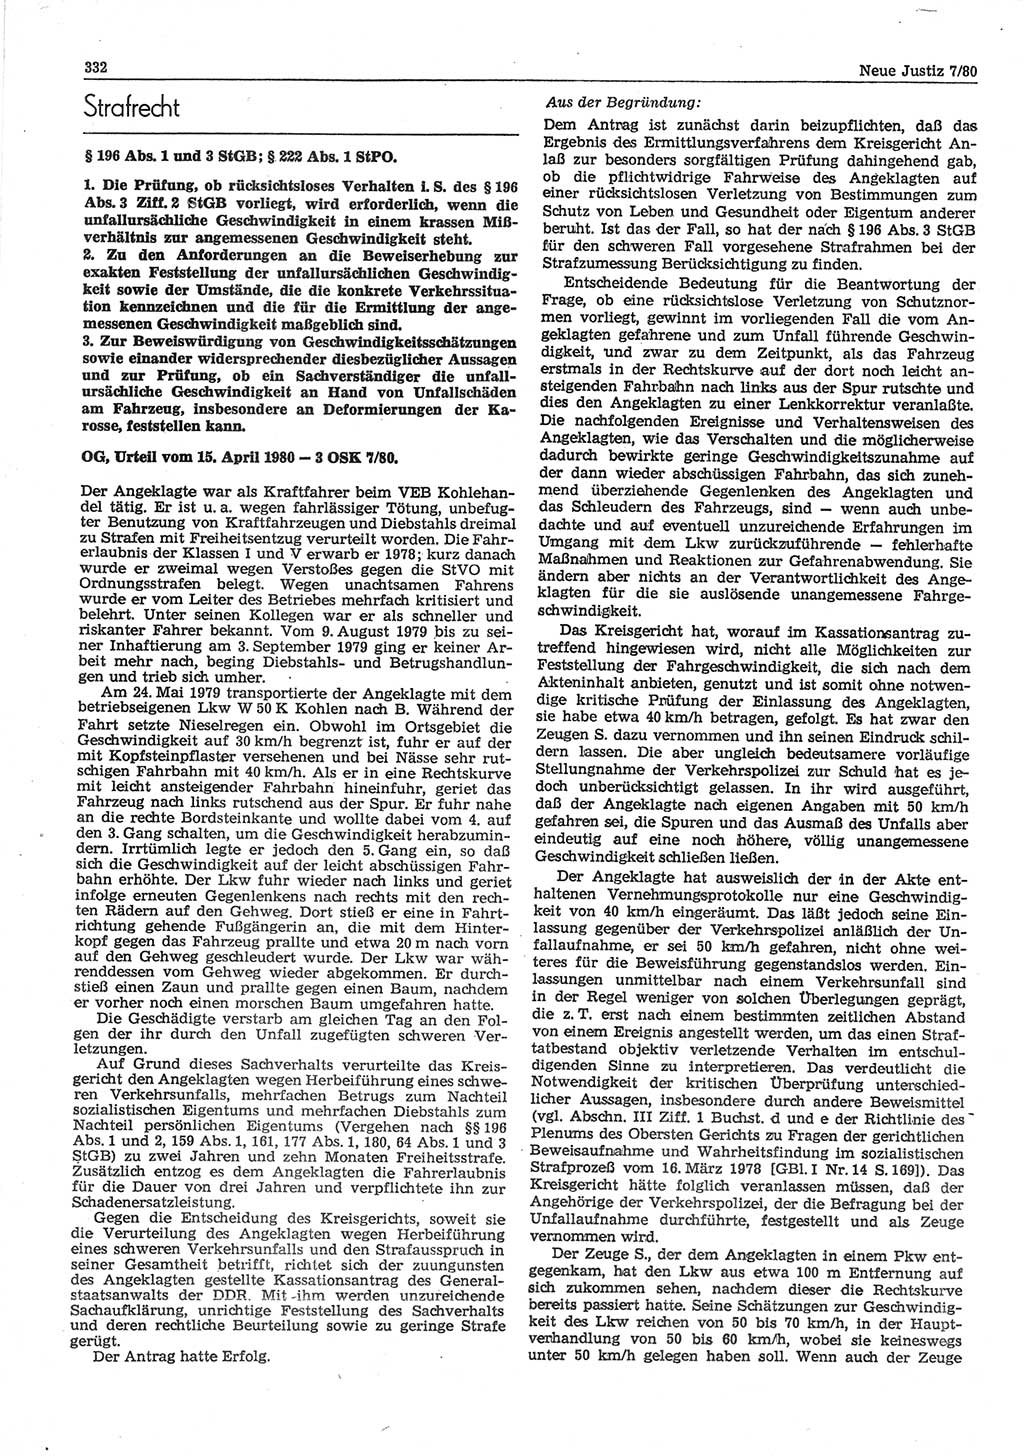 Neue Justiz (NJ), Zeitschrift für sozialistisches Recht und Gesetzlichkeit [Deutsche Demokratische Republik (DDR)], 34. Jahrgang 1980, Seite 332 (NJ DDR 1980, S. 332)